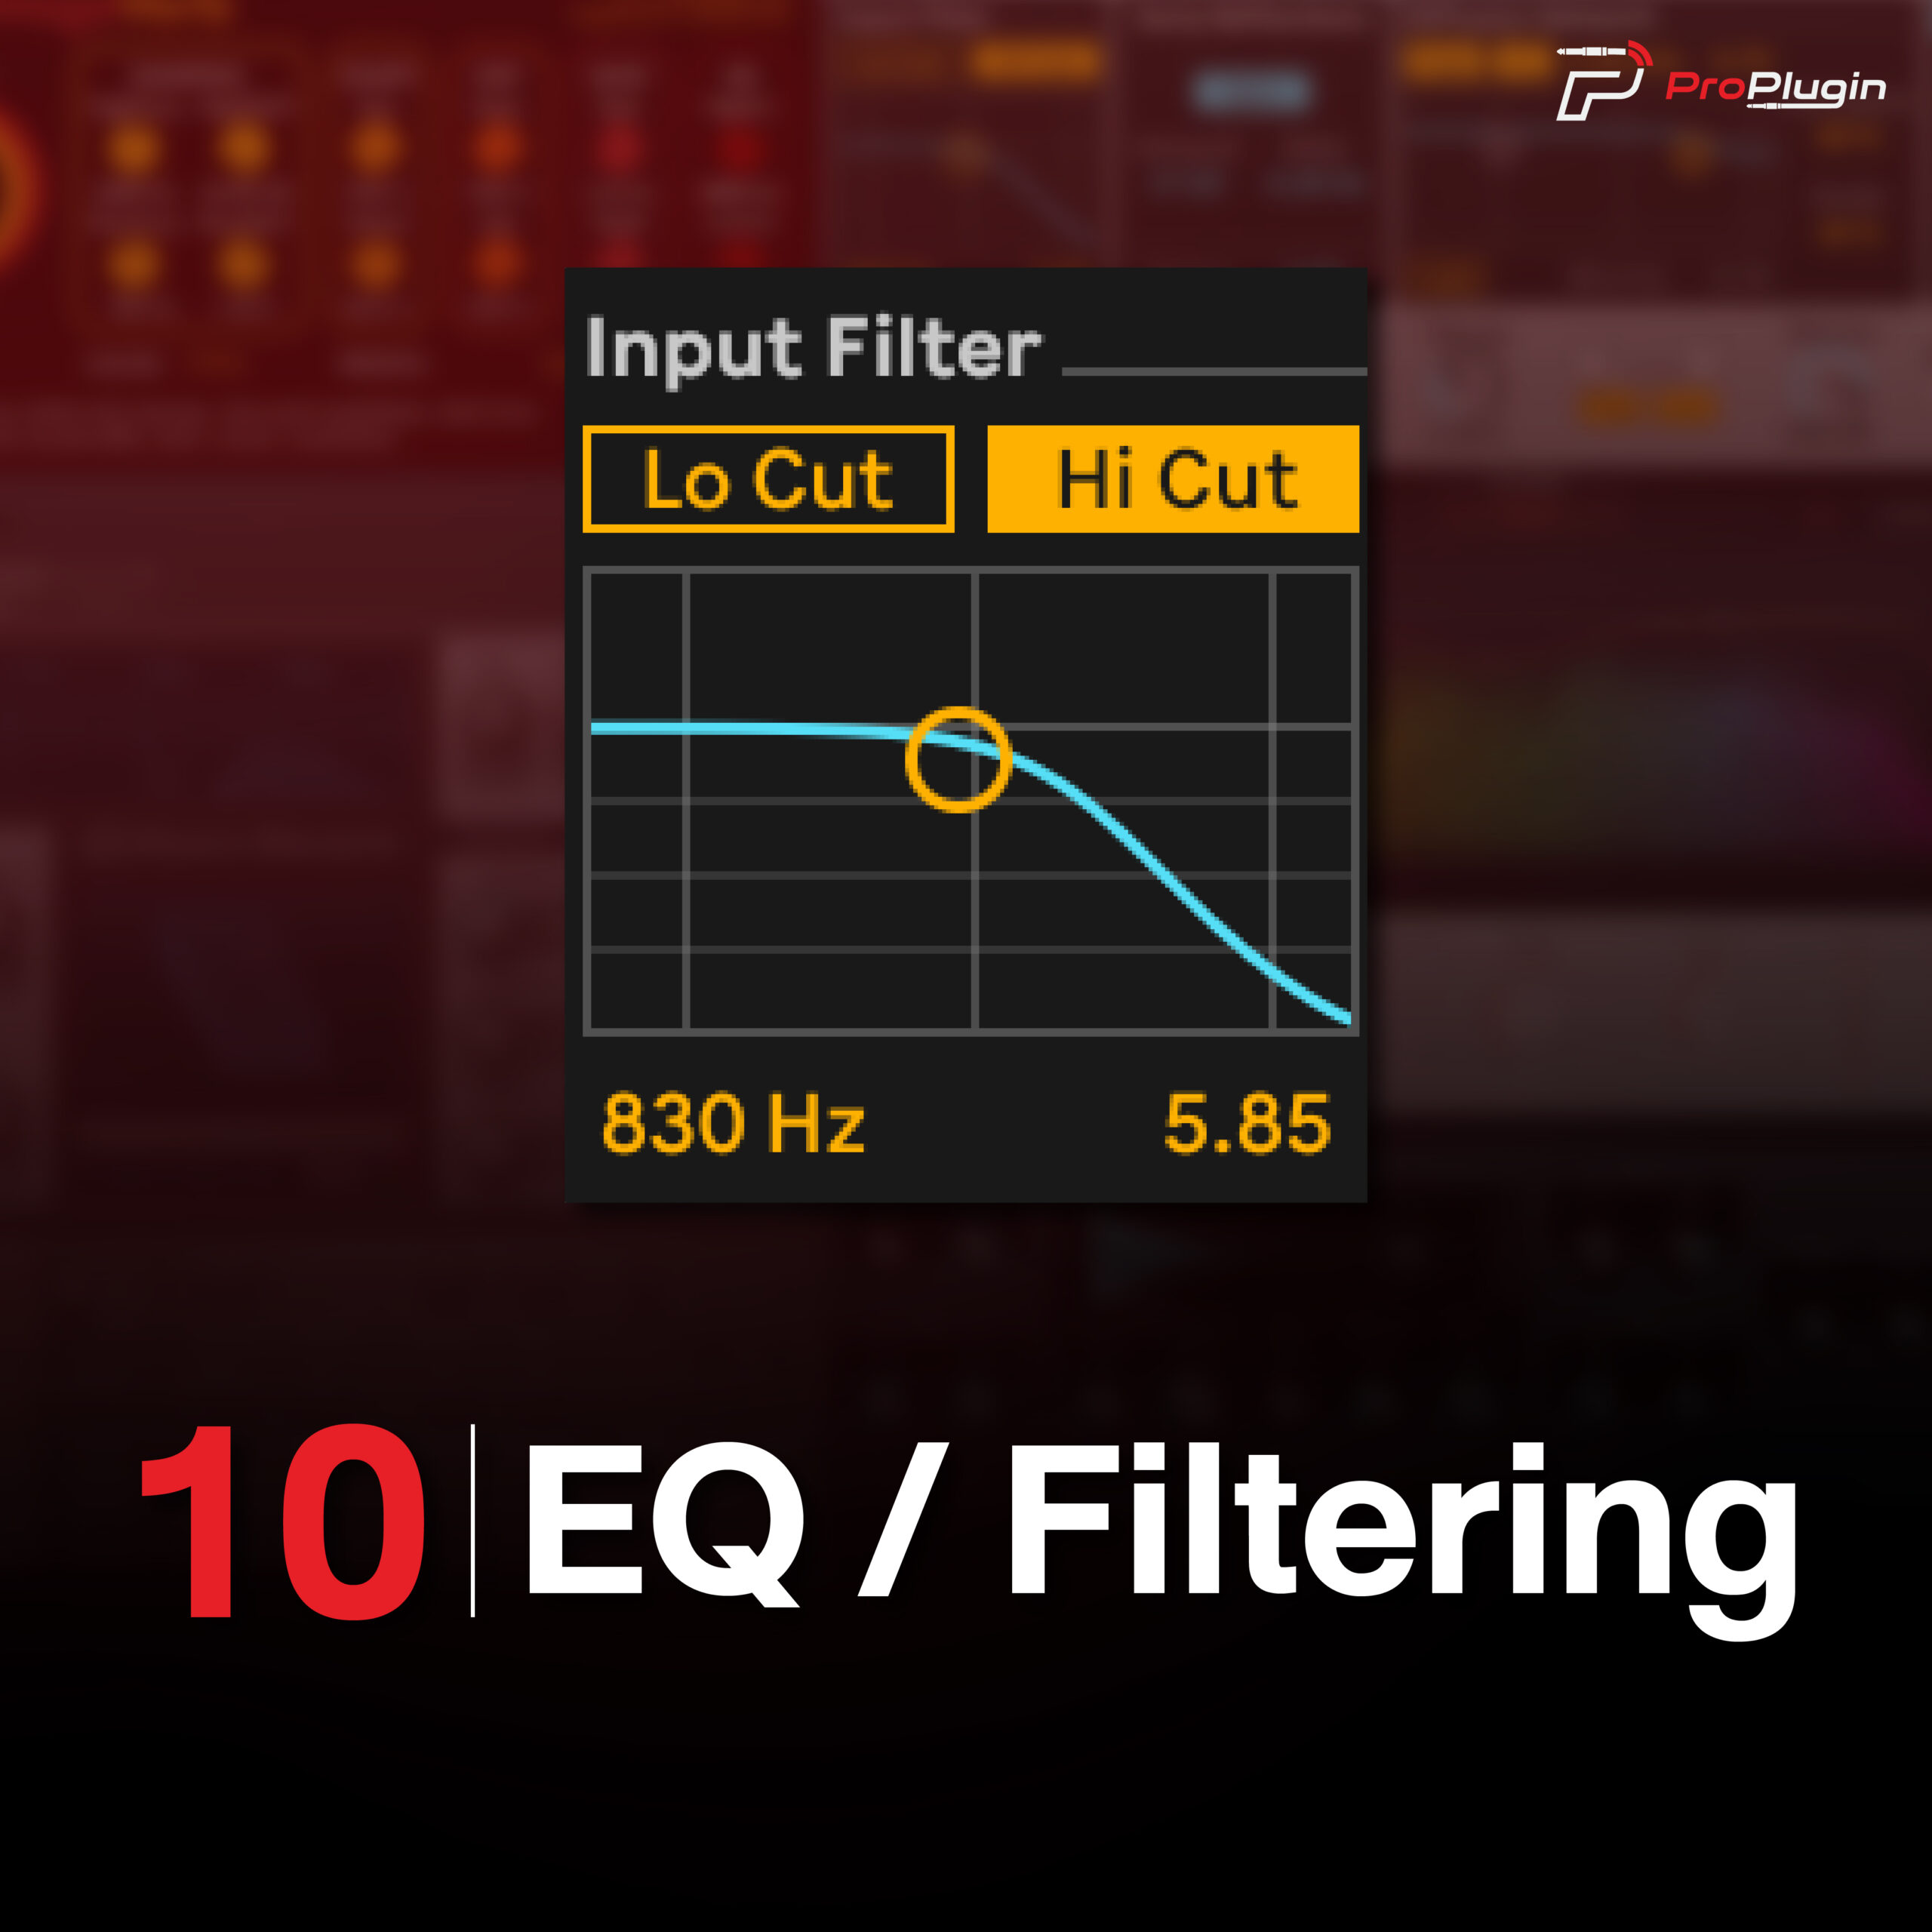 10.EQ / Filtering